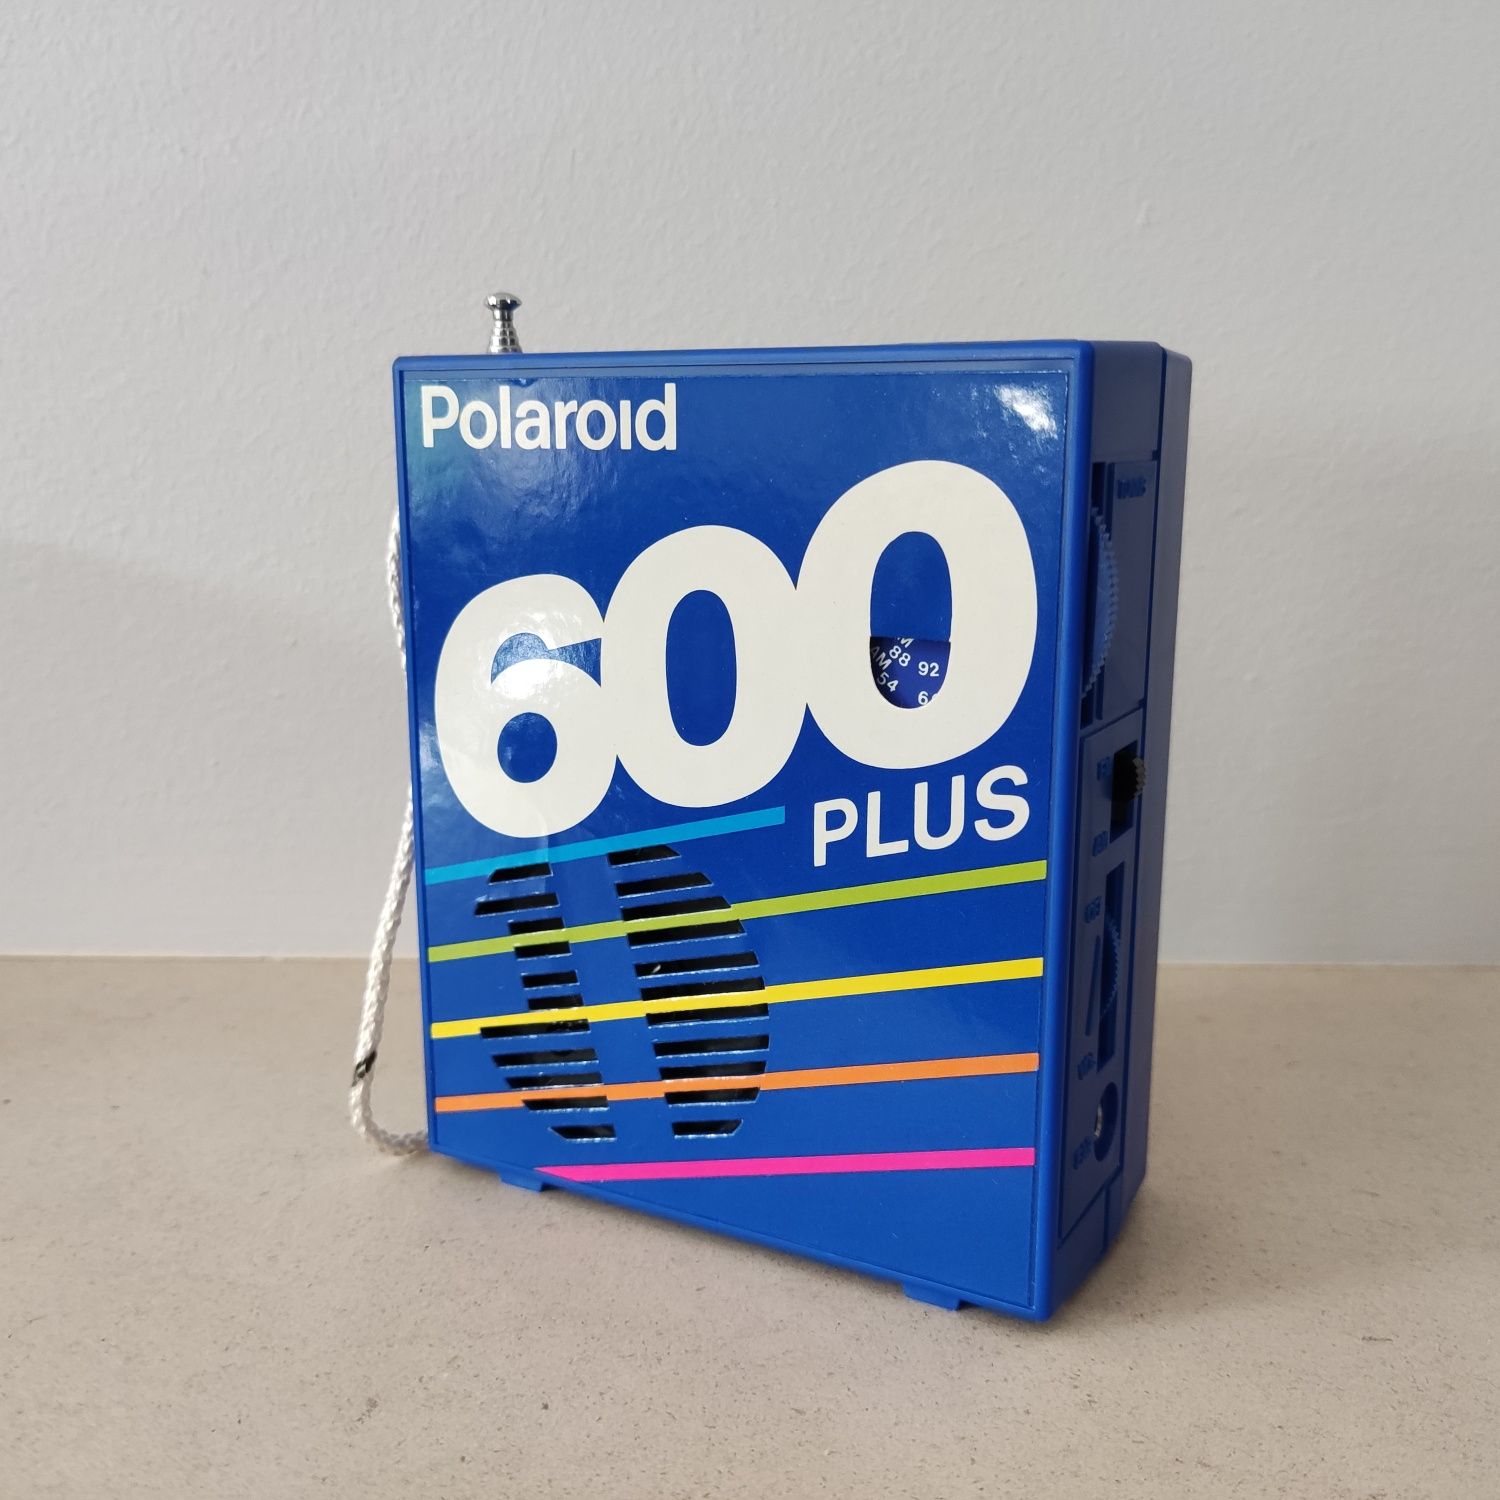 Rádio Polaroid 600 Plus AM/FM com caixa original - vintage